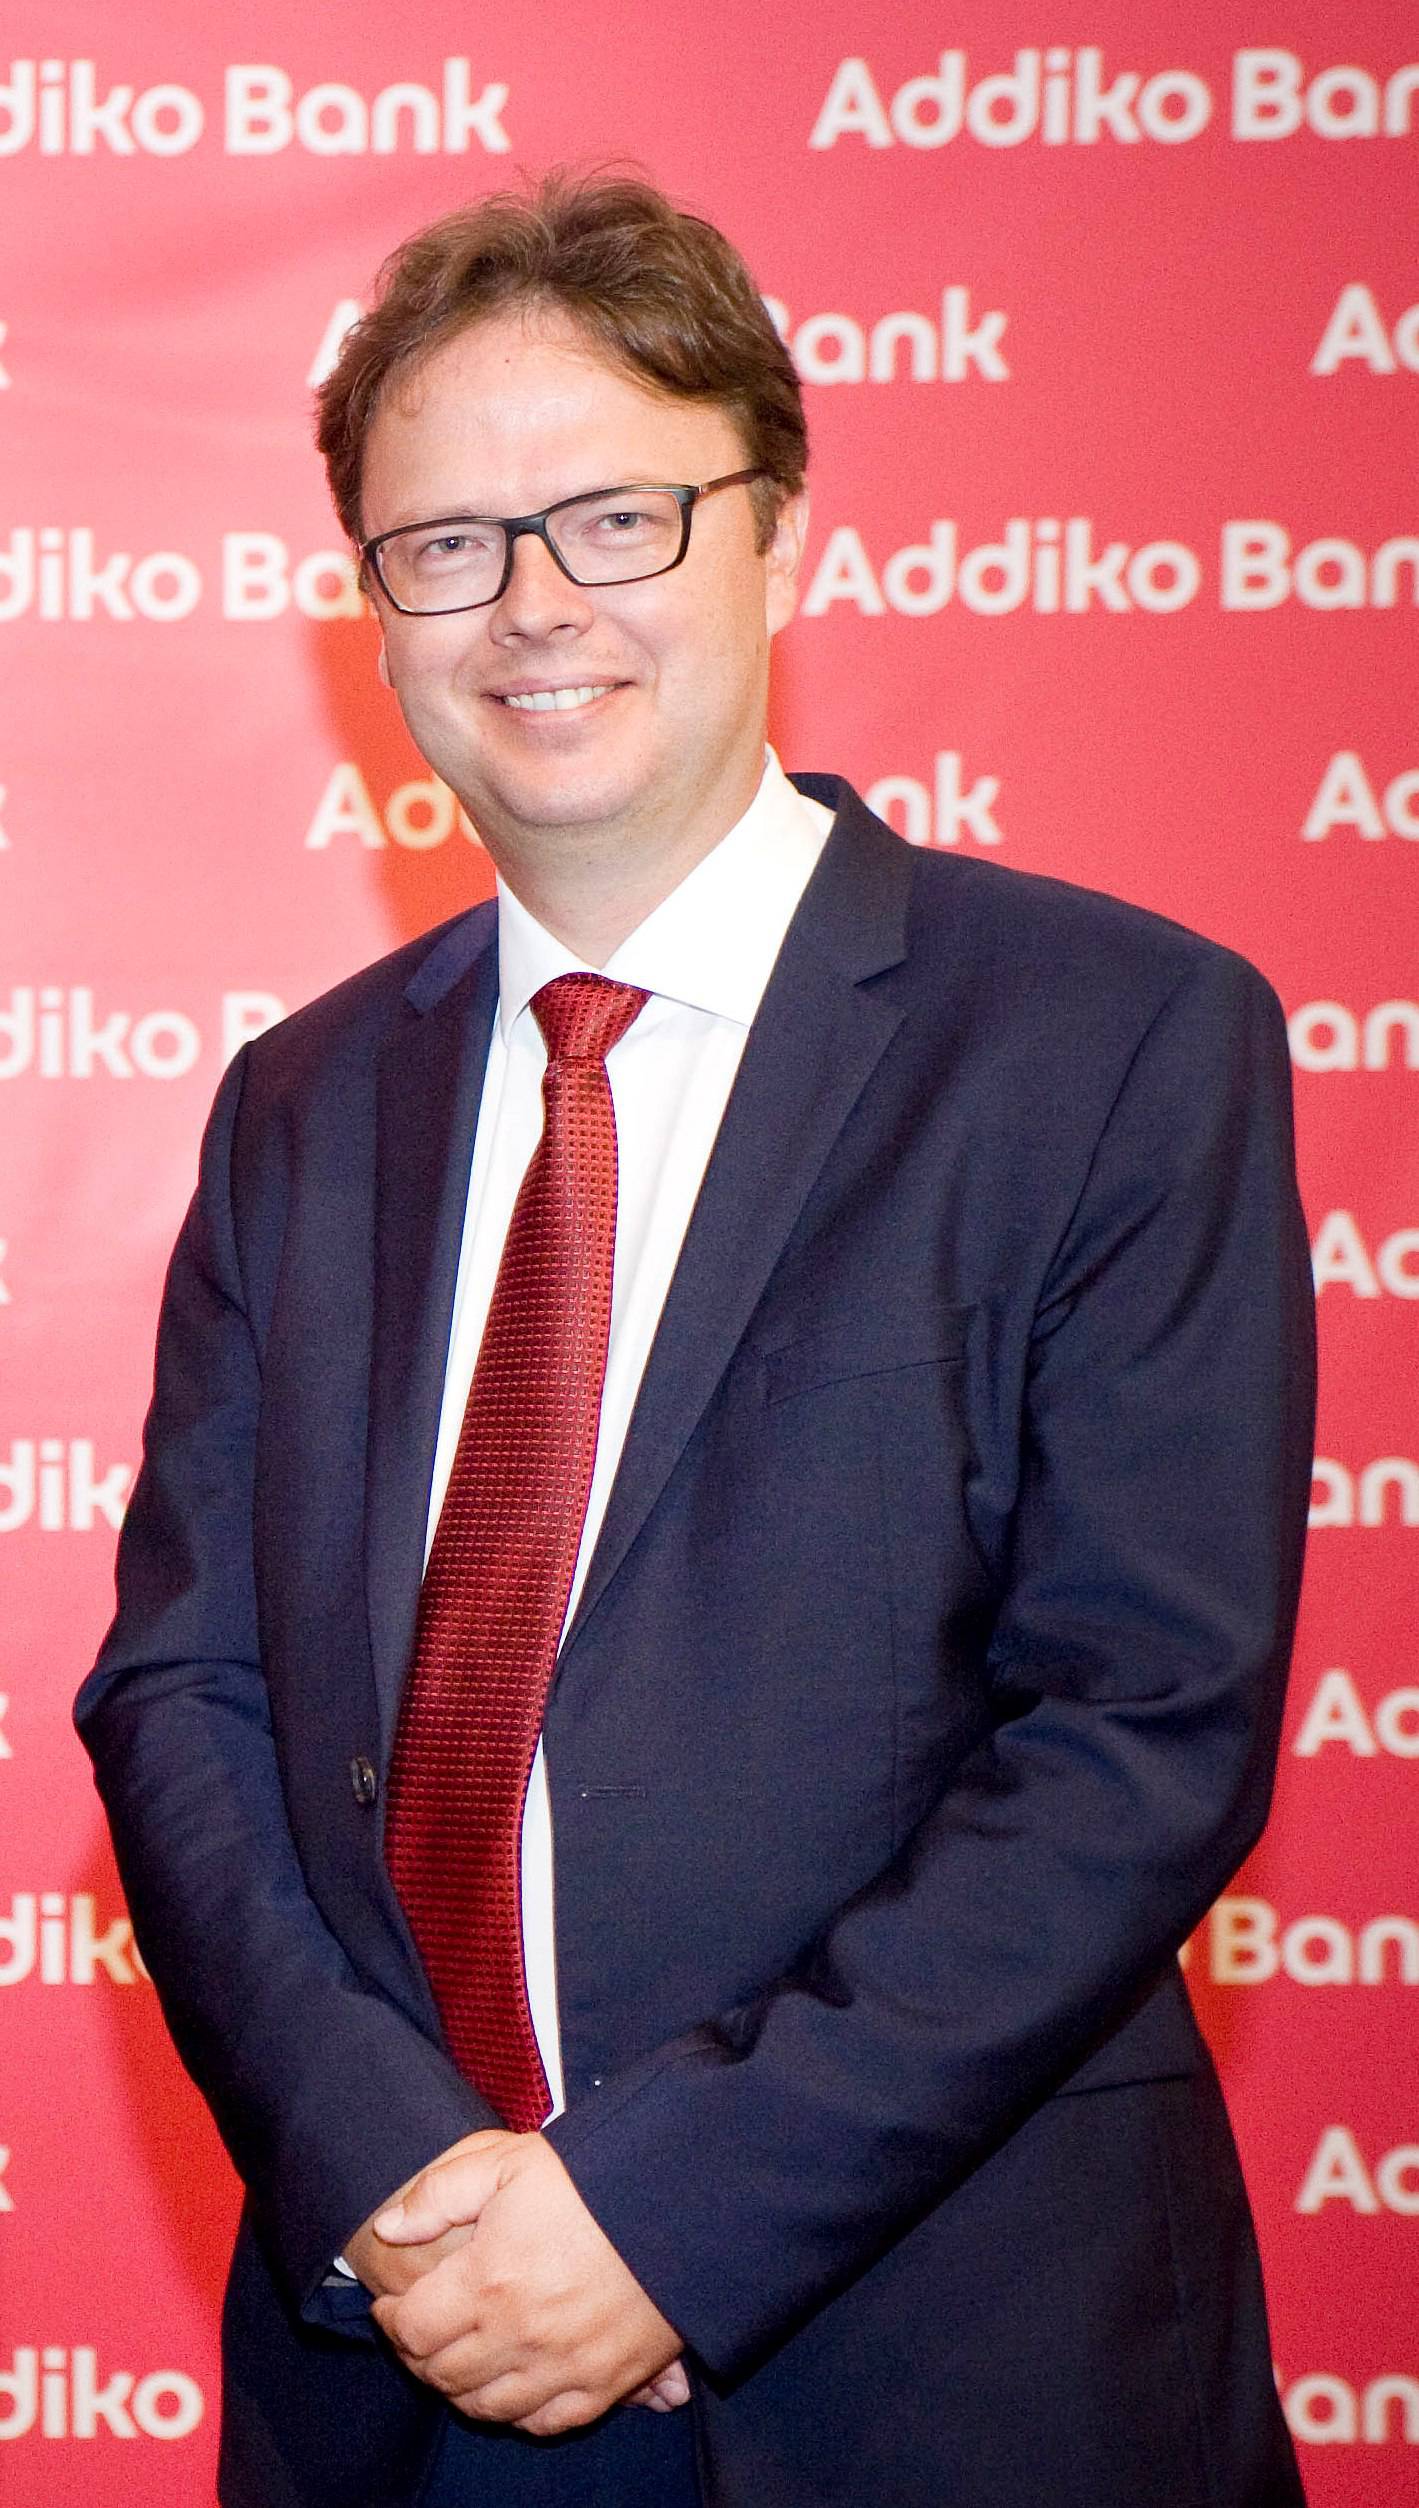 Druga obljetnica poslovanja Addiko banke